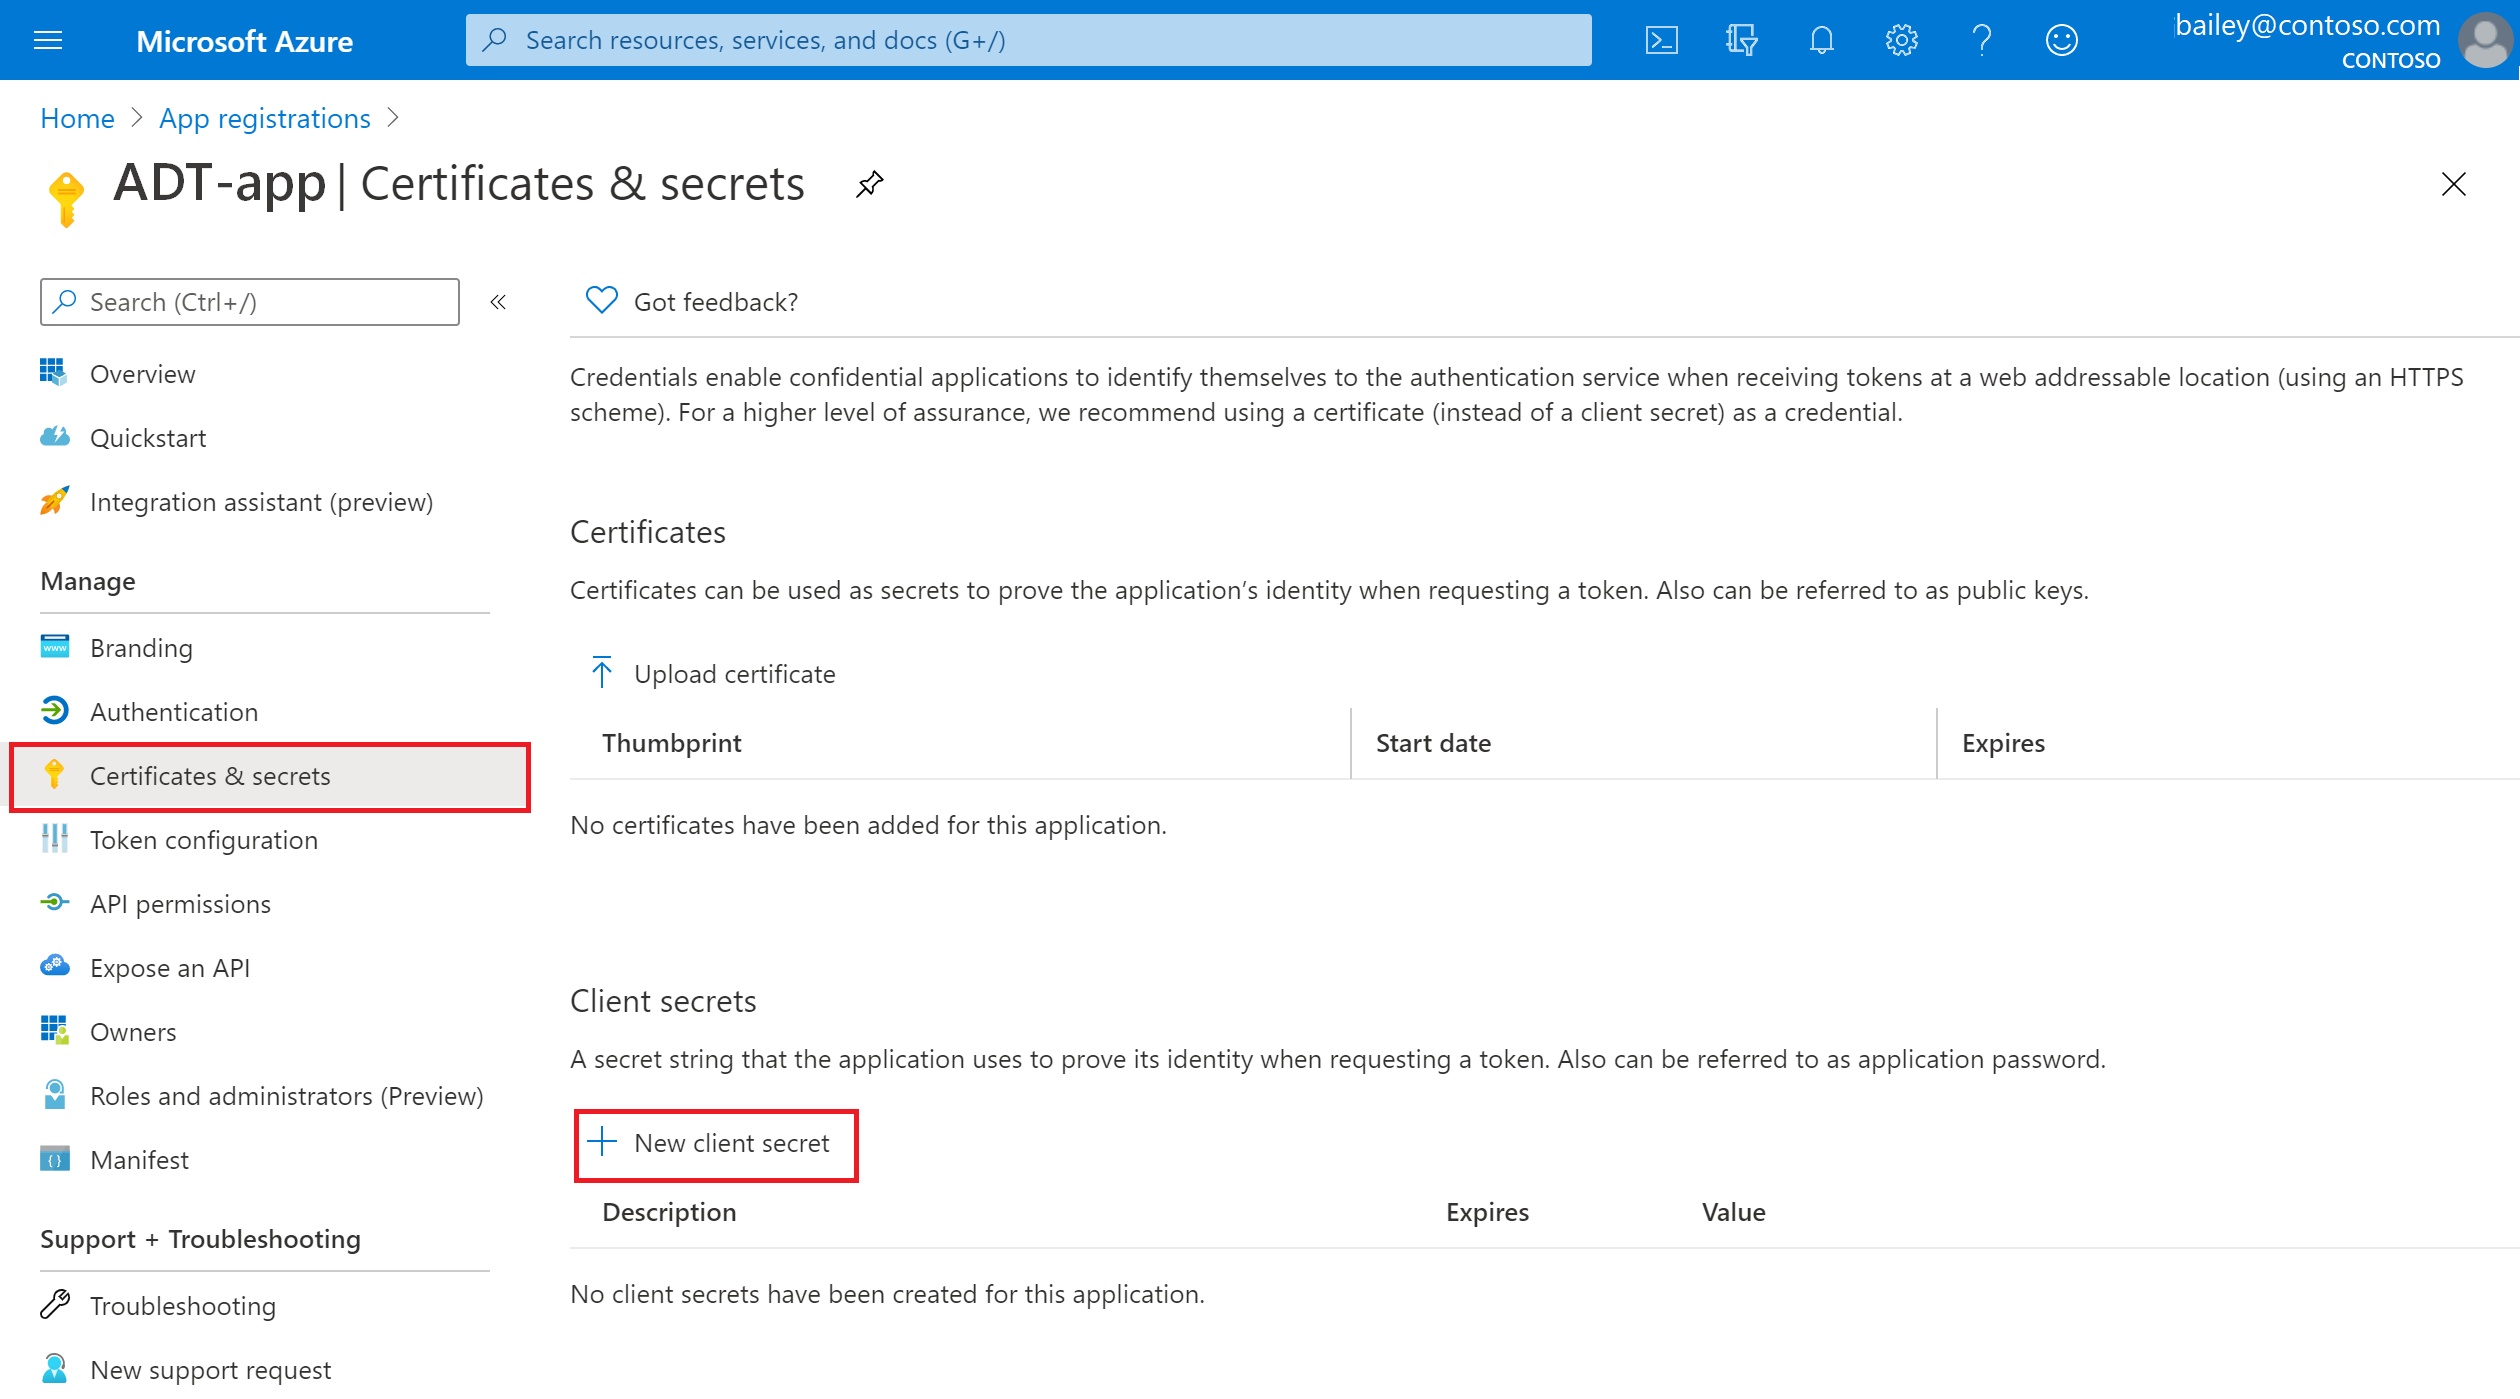 Capture d’écran du portail Azure avec une inscription d’application Microsoft Entra et l’option « Nouveau secret client » mise en évidence.